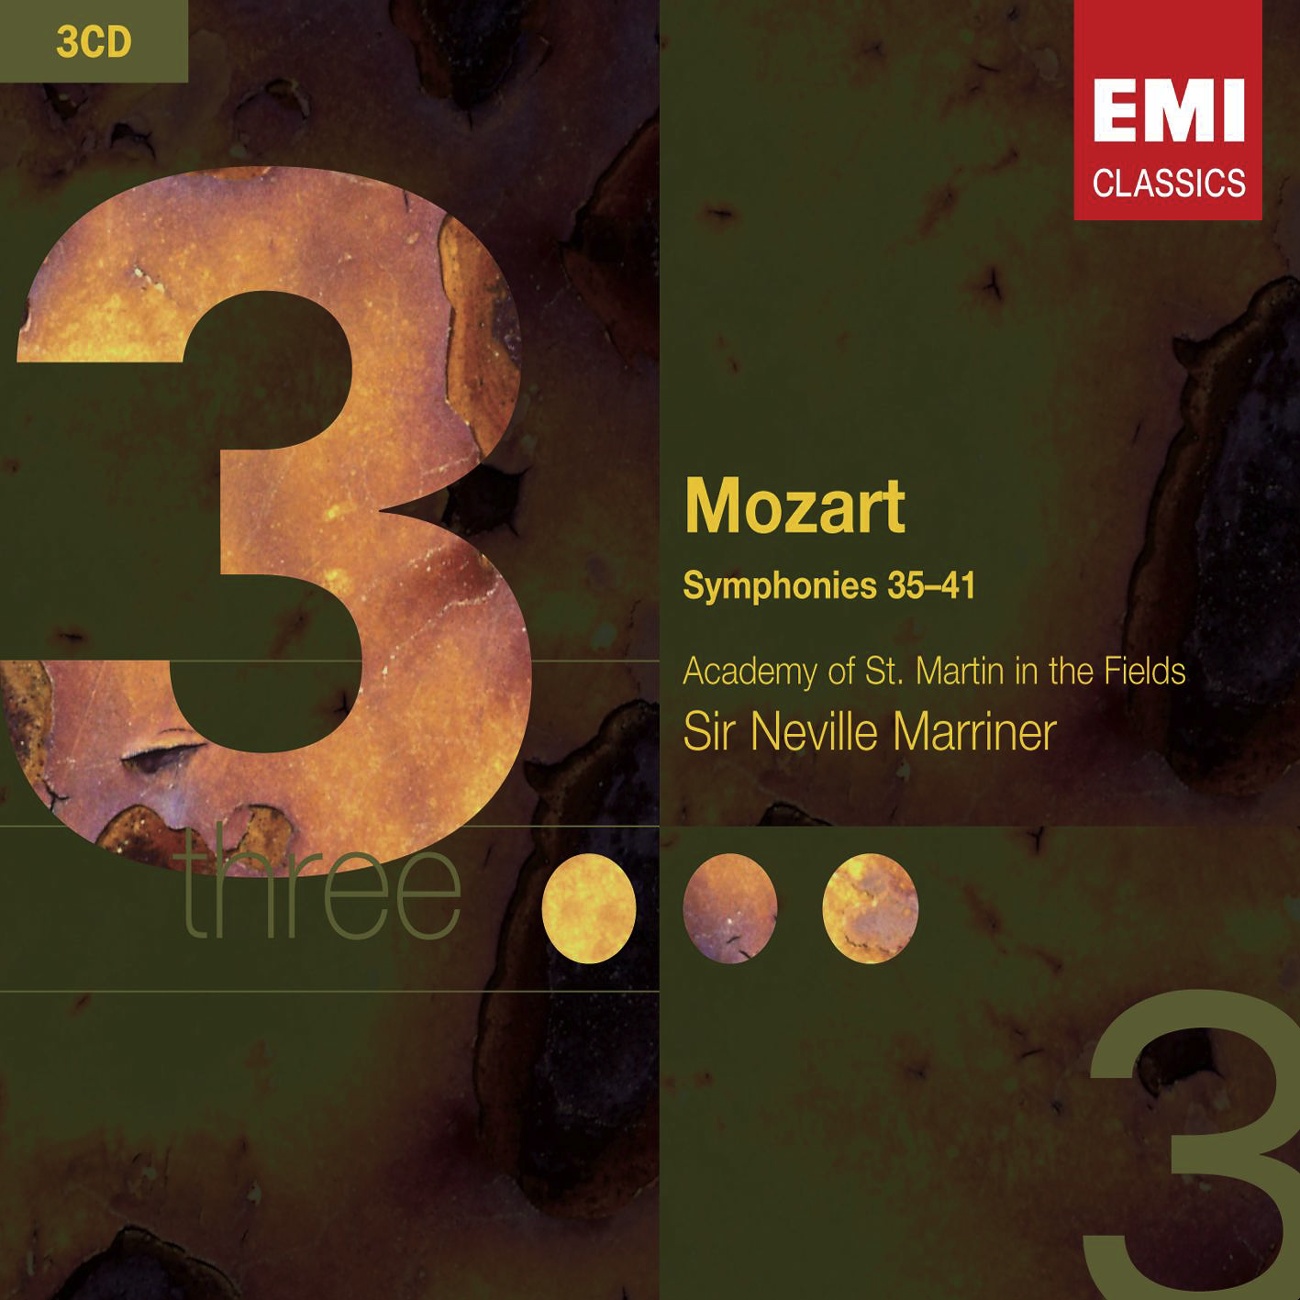 Symphony No. 36 in C, 'Linz' K425: Menuetto